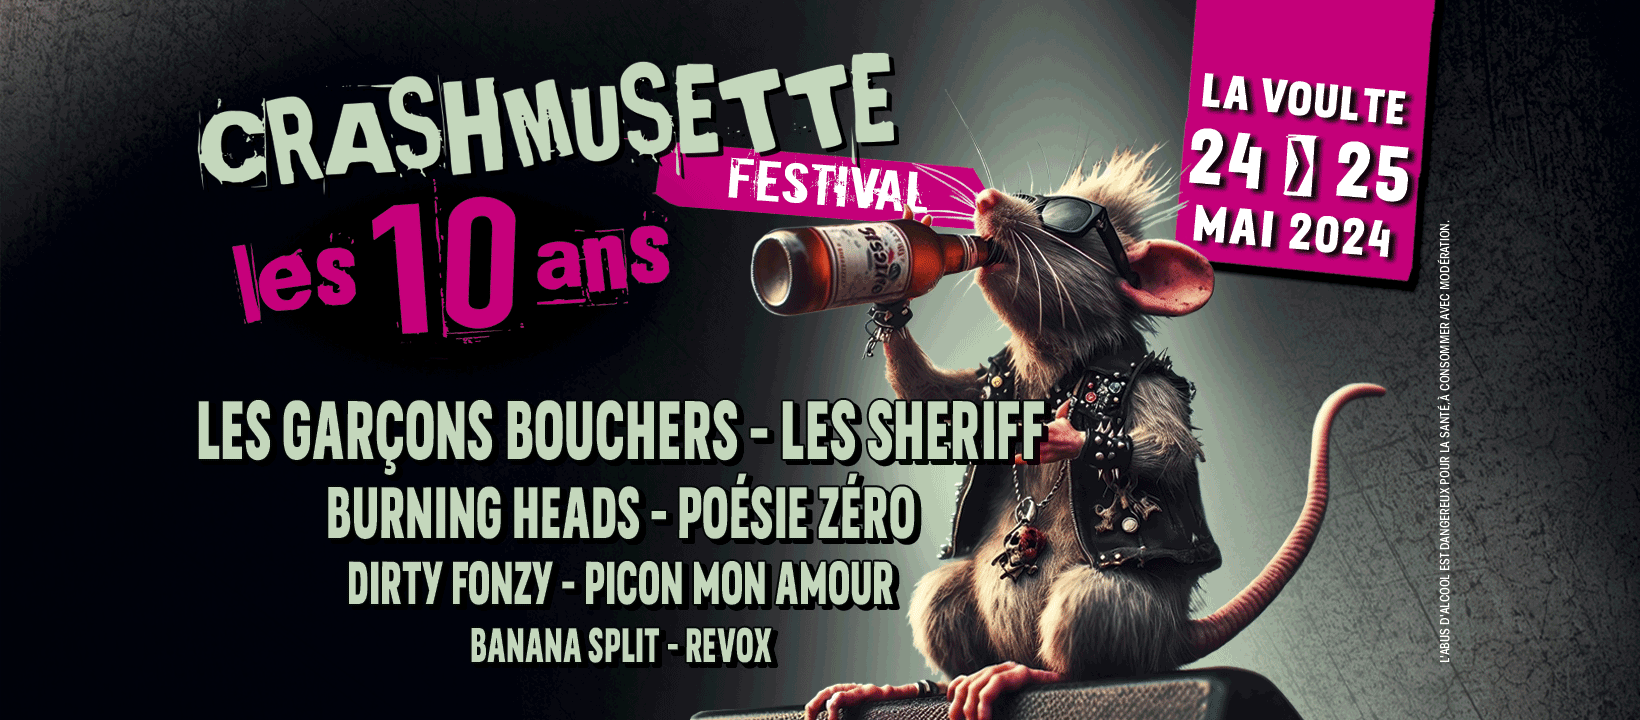 Alle leuke evenementen! : Festival de musique actuelle Crashmusette - Soirée-concert du vendredi